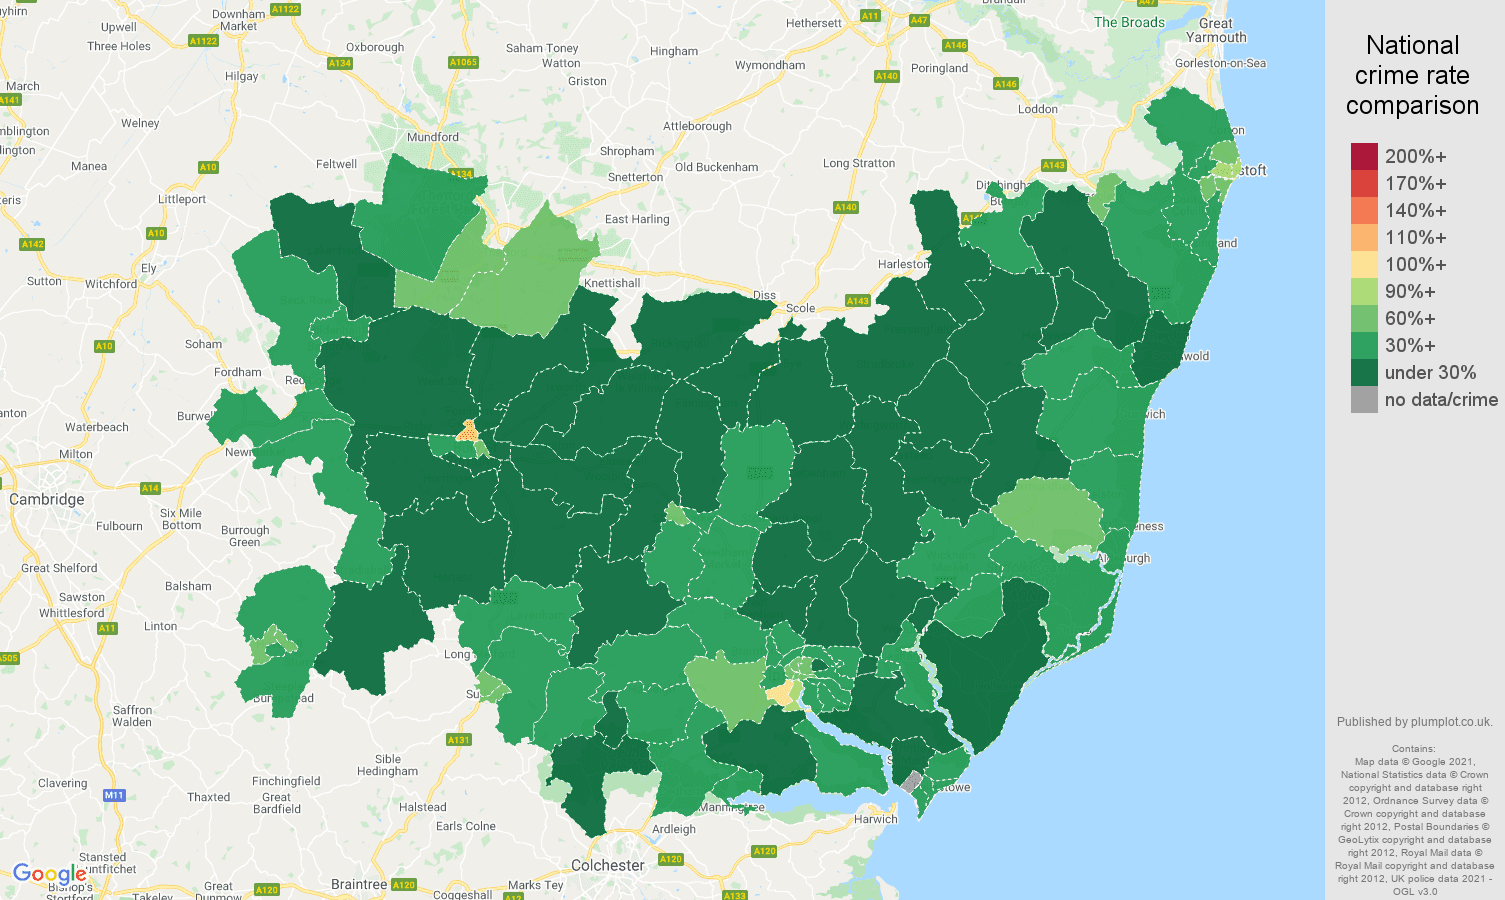 Suffolk antisocial behaviour crime rate comparison map